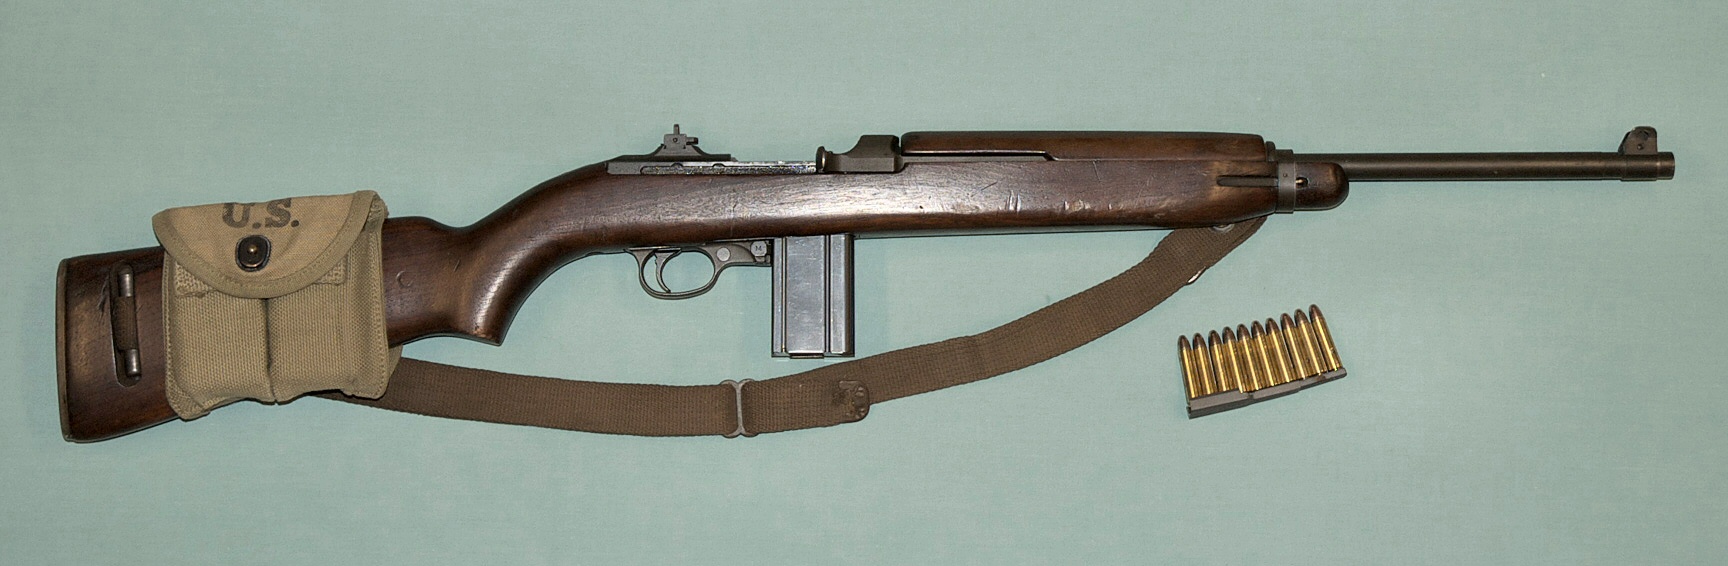 M1 Carbine #10